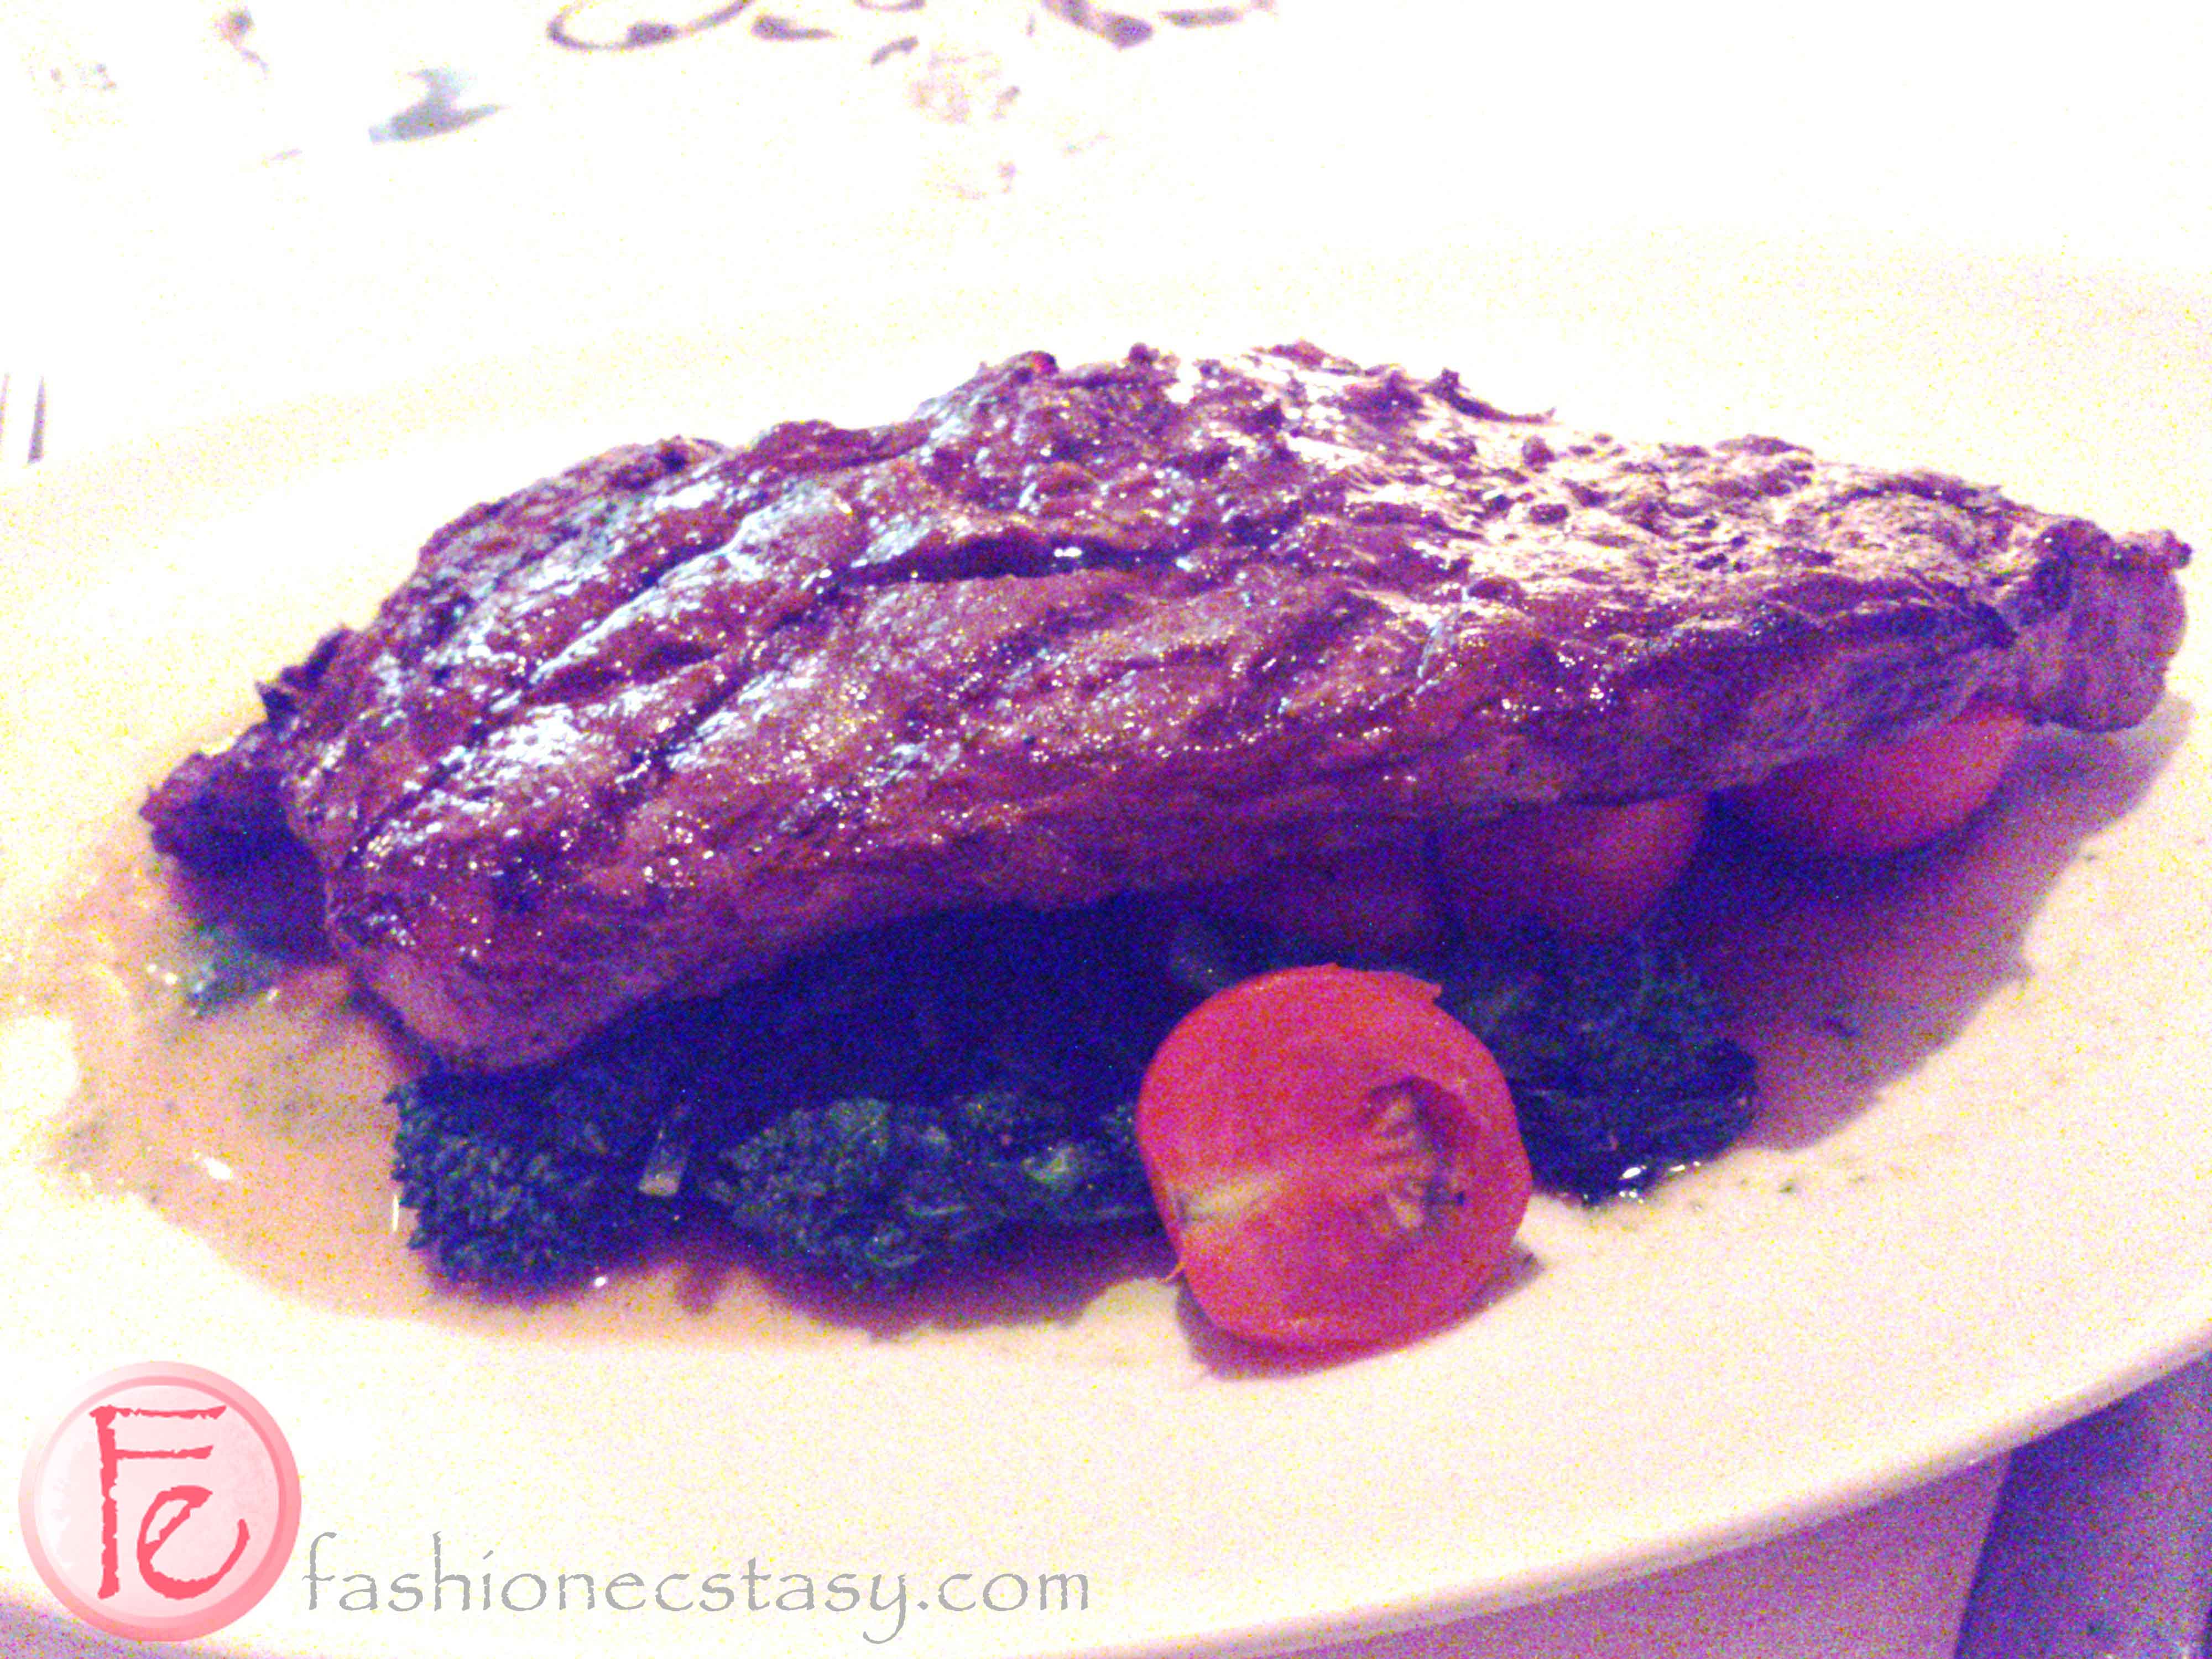 OYA Restaurant's NY Strip Steak